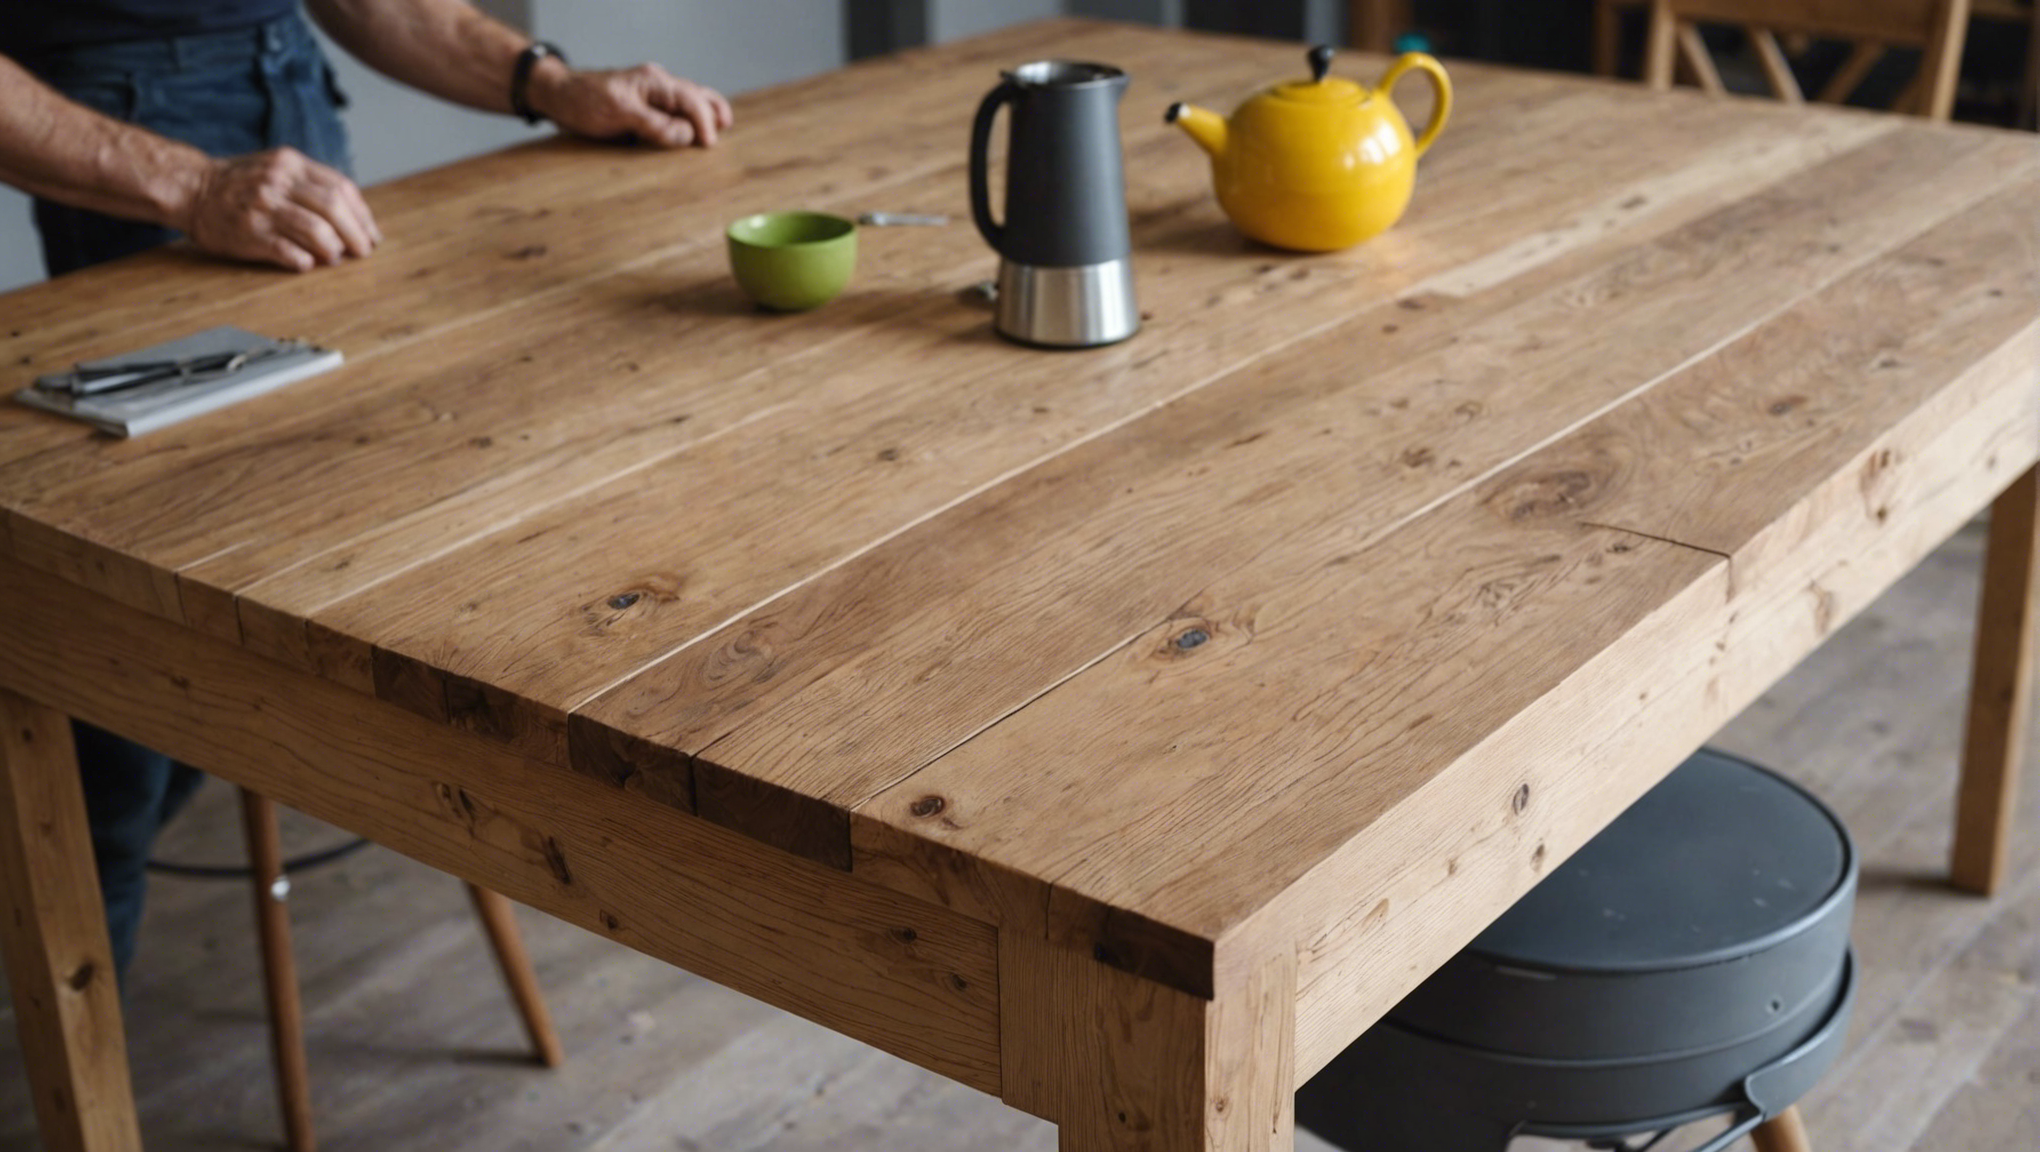 découvrez les étapes de la rénovation pour redonner vie à une table en bois et lui donner une seconde jeunesse. conseils et astuces pour restaurer et embellir vos meubles en bois.